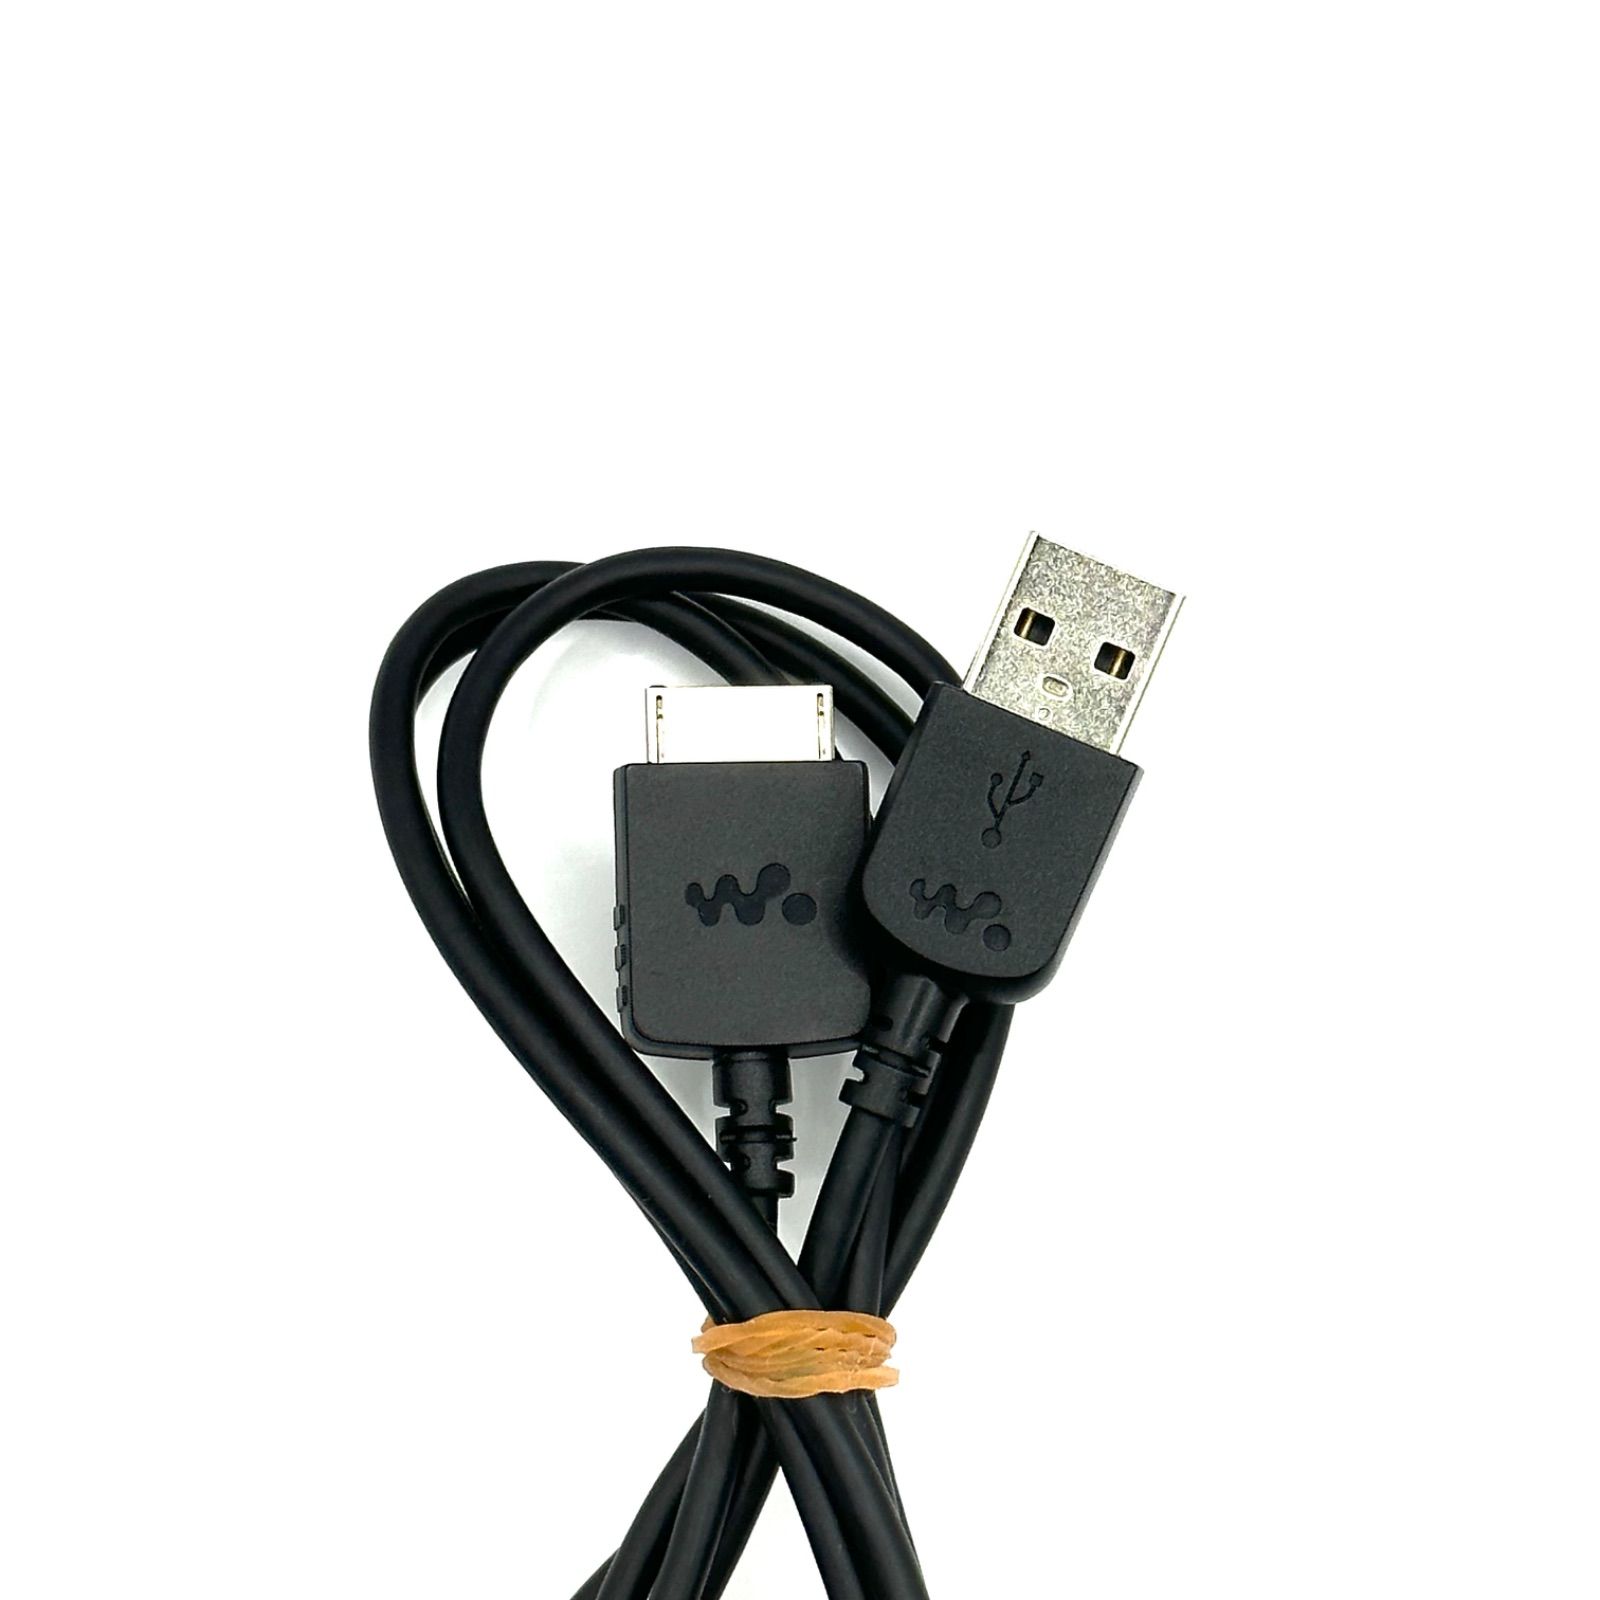 ソニー WM-PORT専用 USBケーブル 1.0m ウォークマン用 - ケーブル